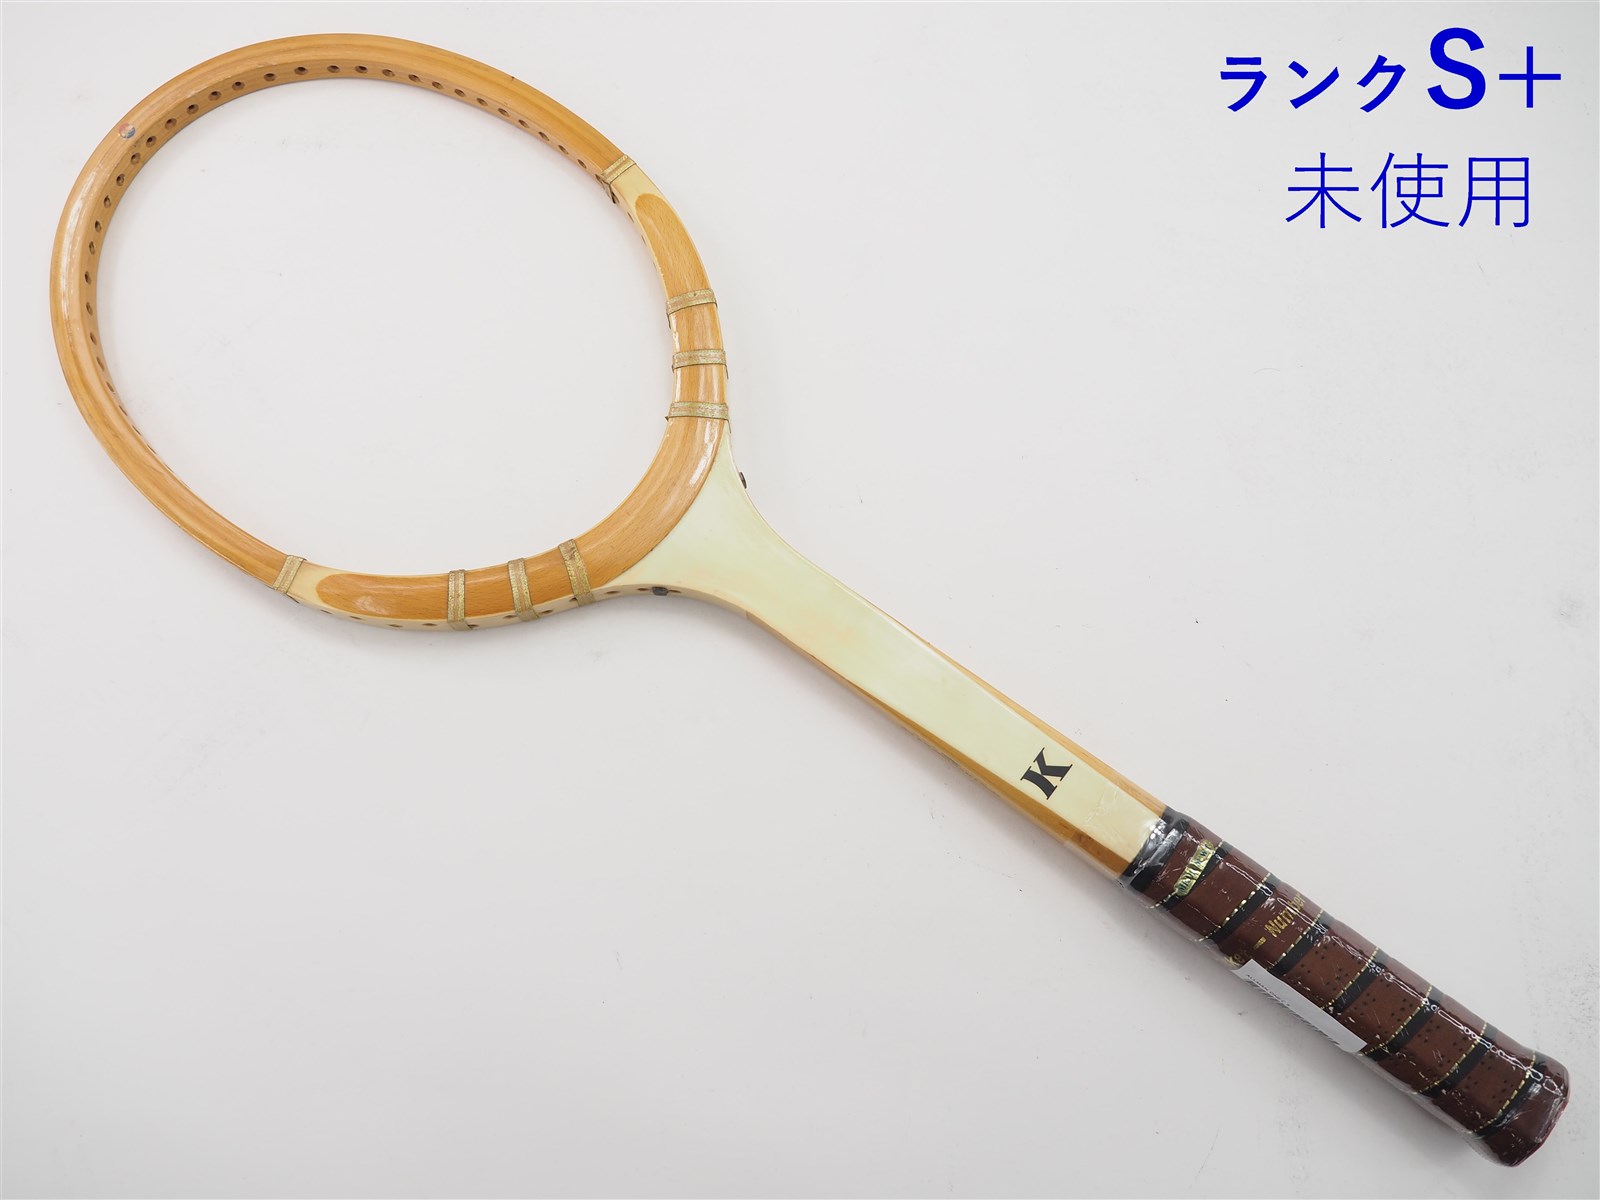 テニスラケット カワサキ オールマン ワン (G4)KAWASAKI ALLMAN ONE15mm重量